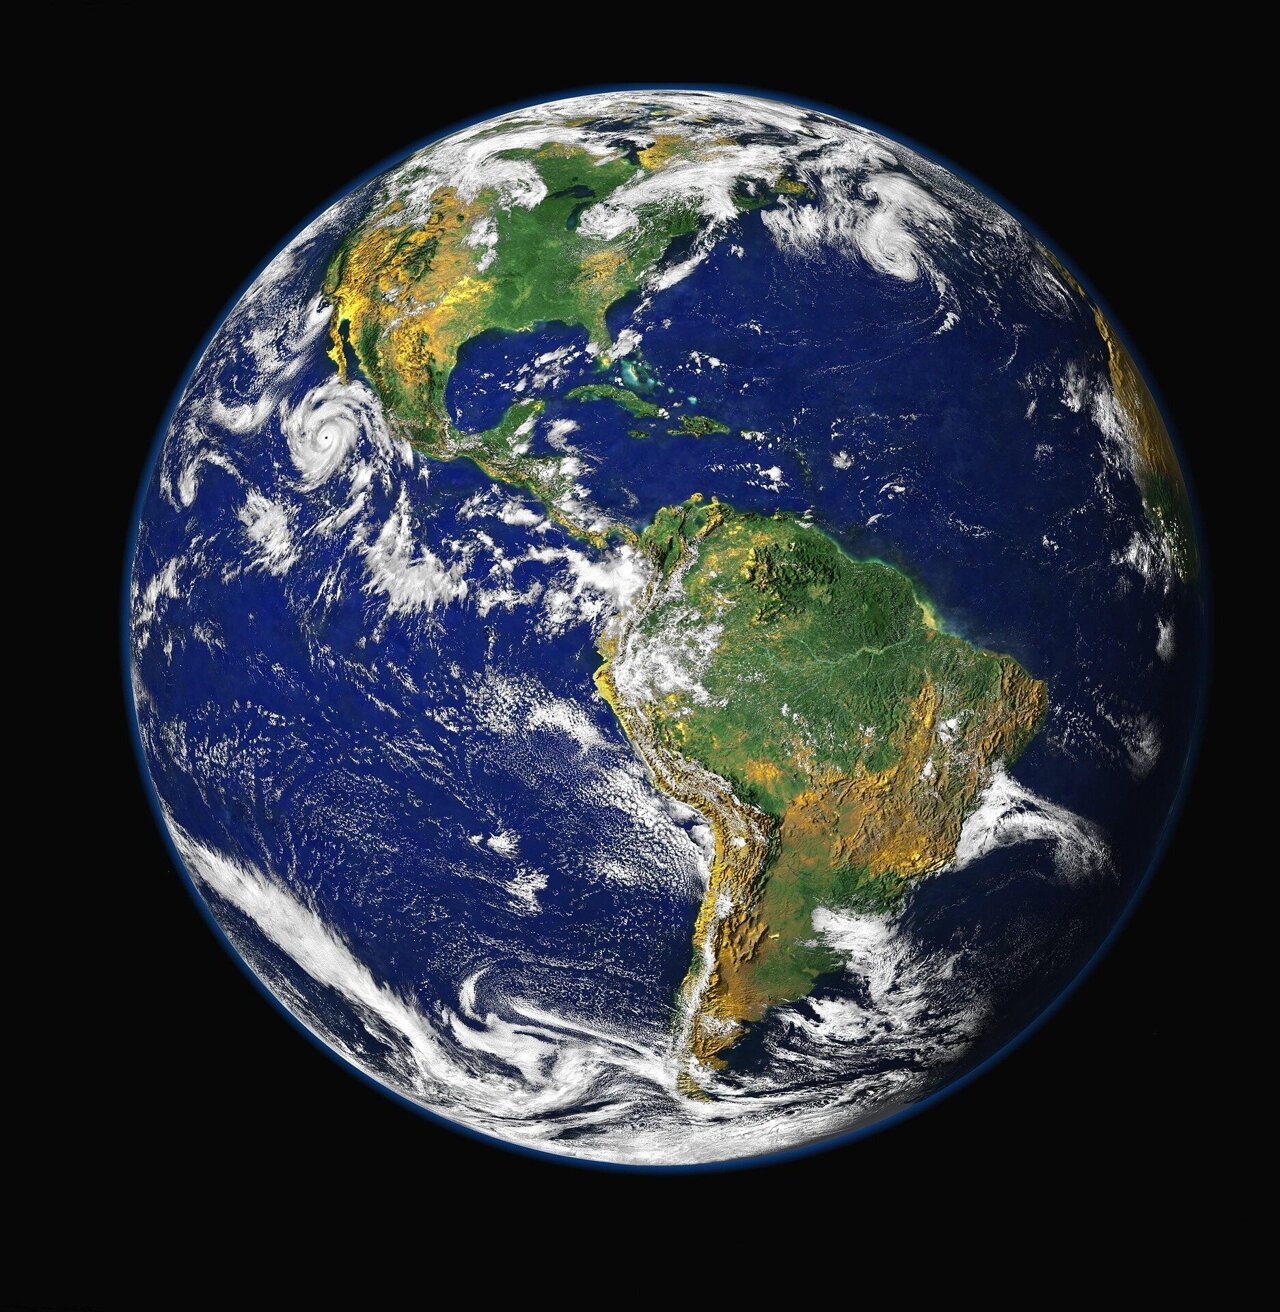 Build the Earth - Wikipedia